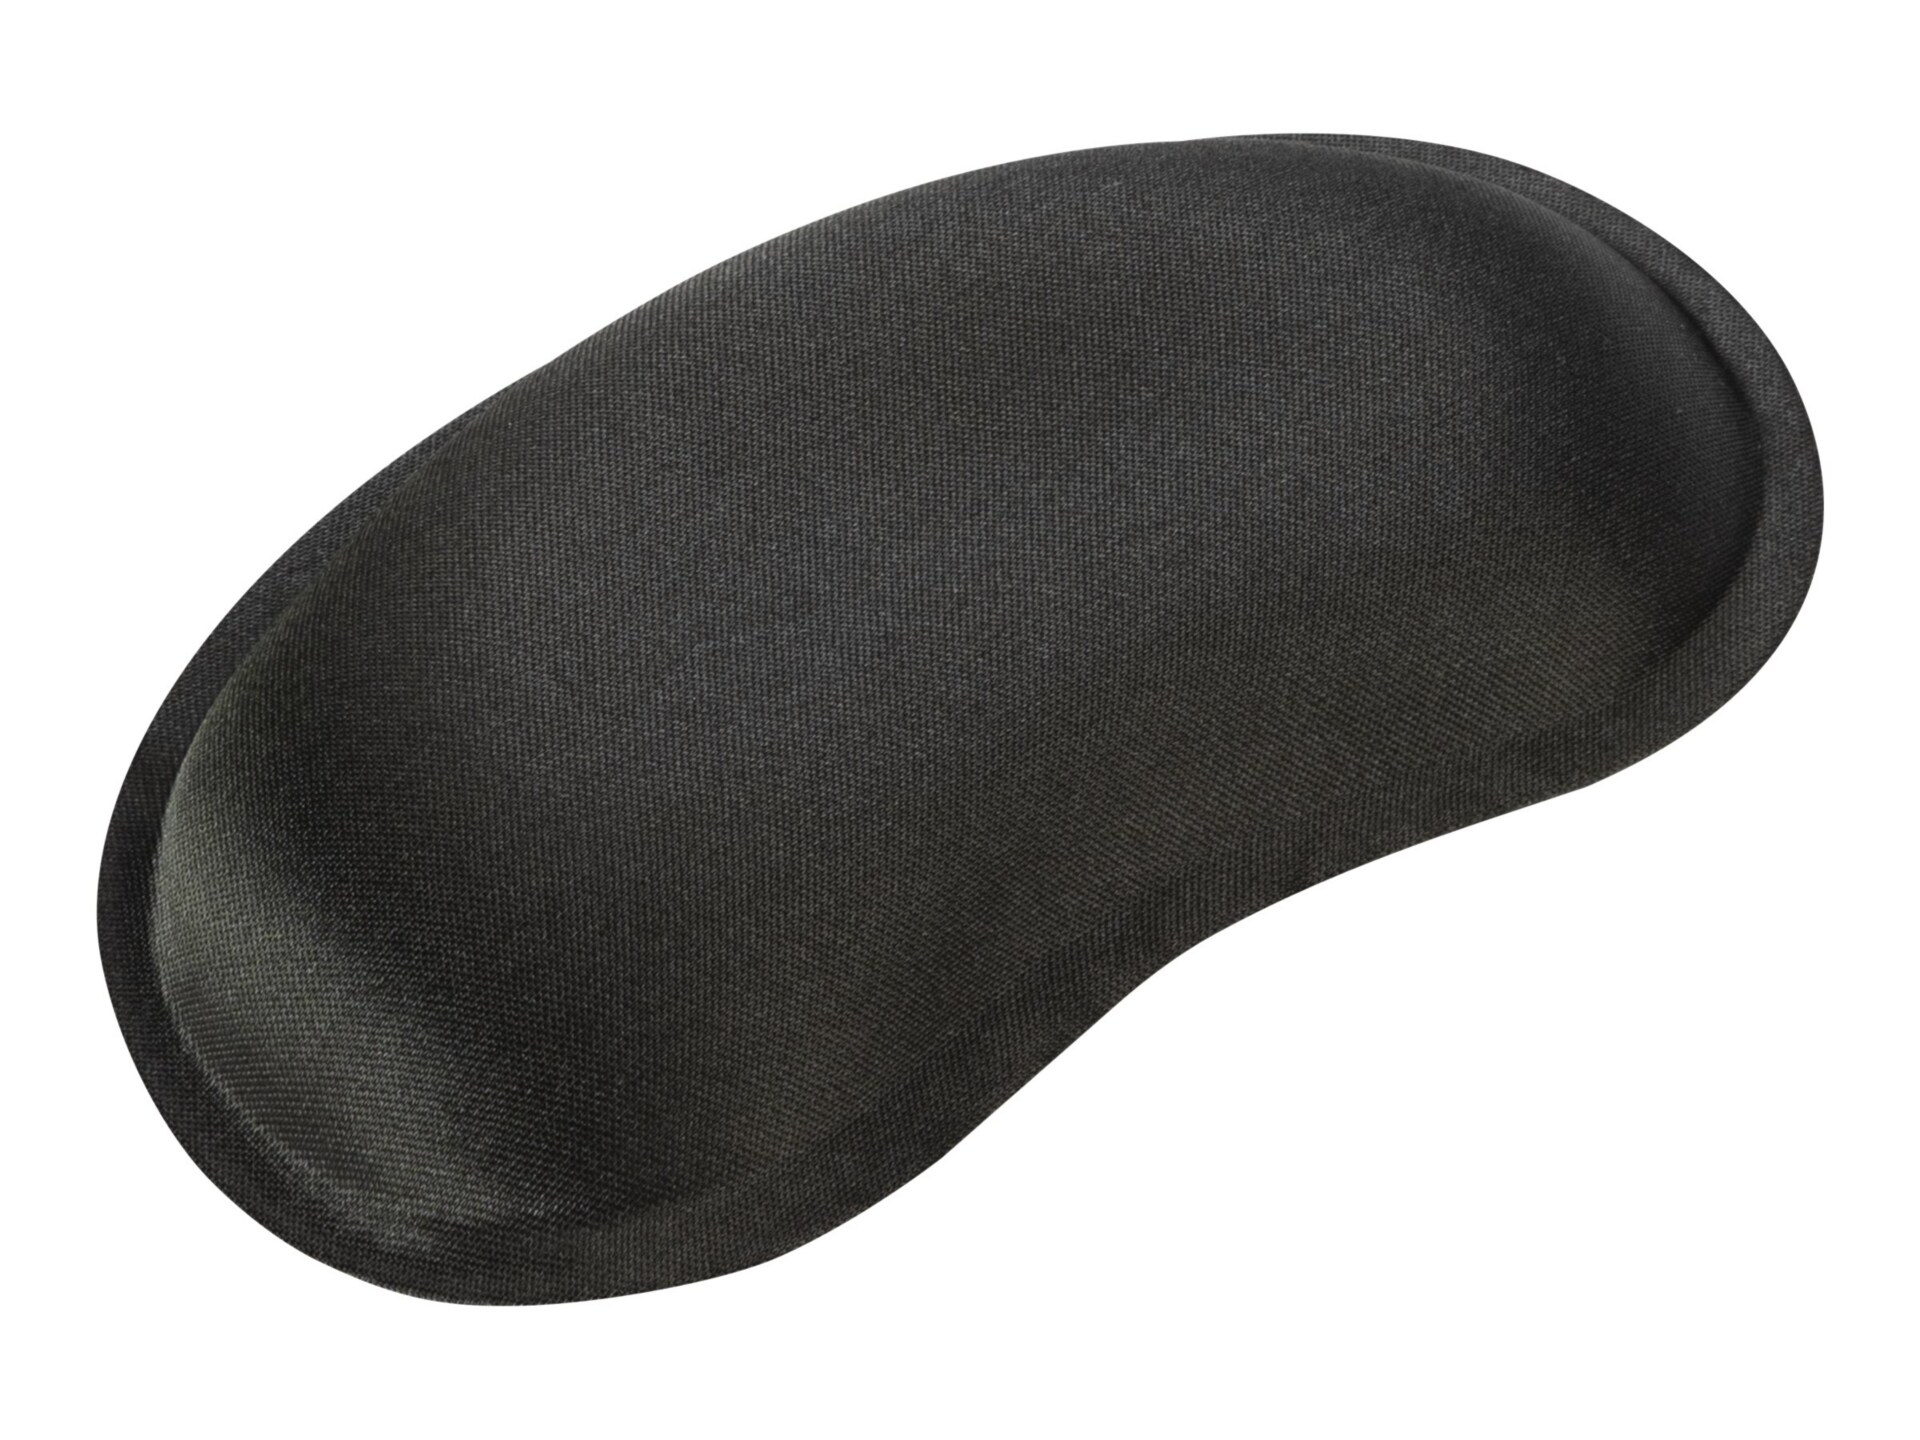 Belkin WaveRest Gel Wrist Pad - Black